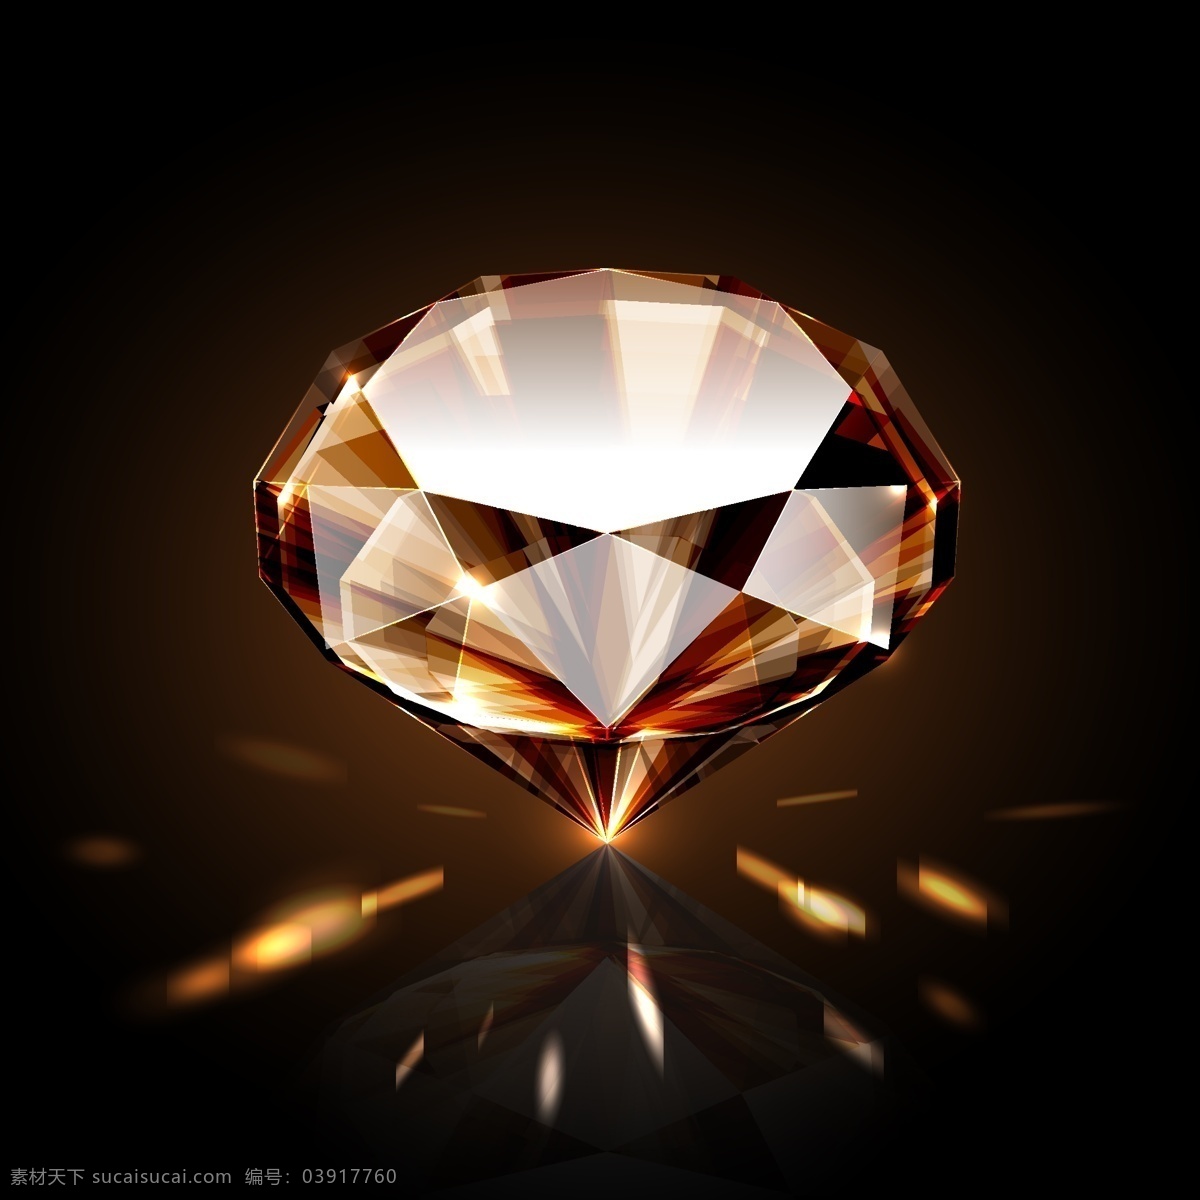 璀璨 钻石 珠宝 矢量图 格式 psd素材 矢量 高清图片